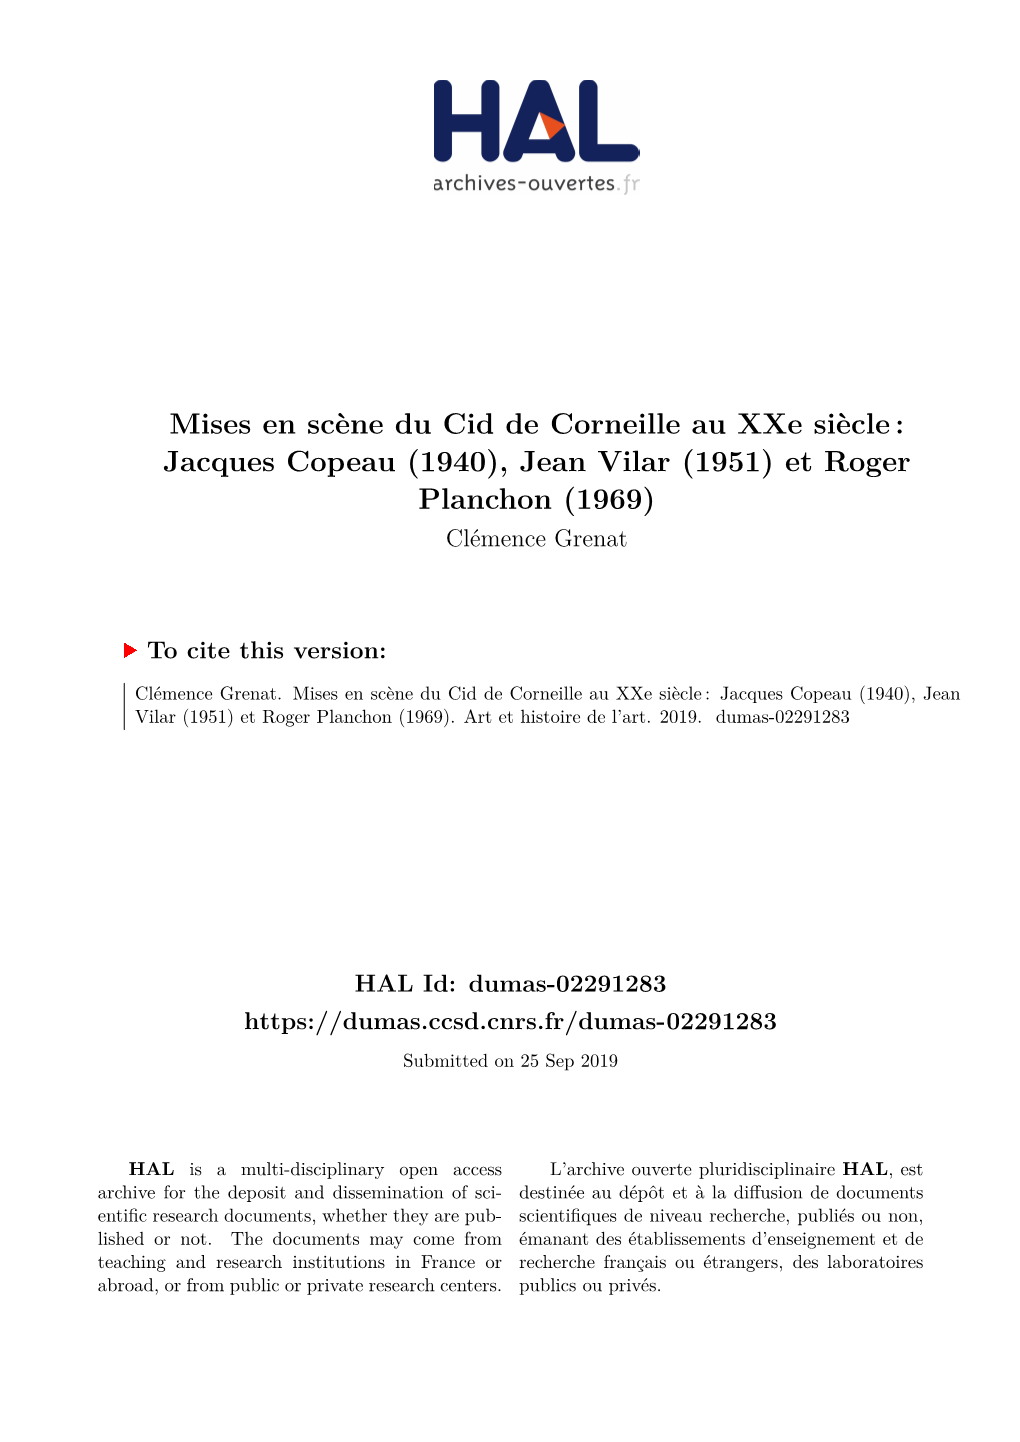 Mises En Scène Du Cid De Corneille Au Xxe Siècle: Jacques Copeau